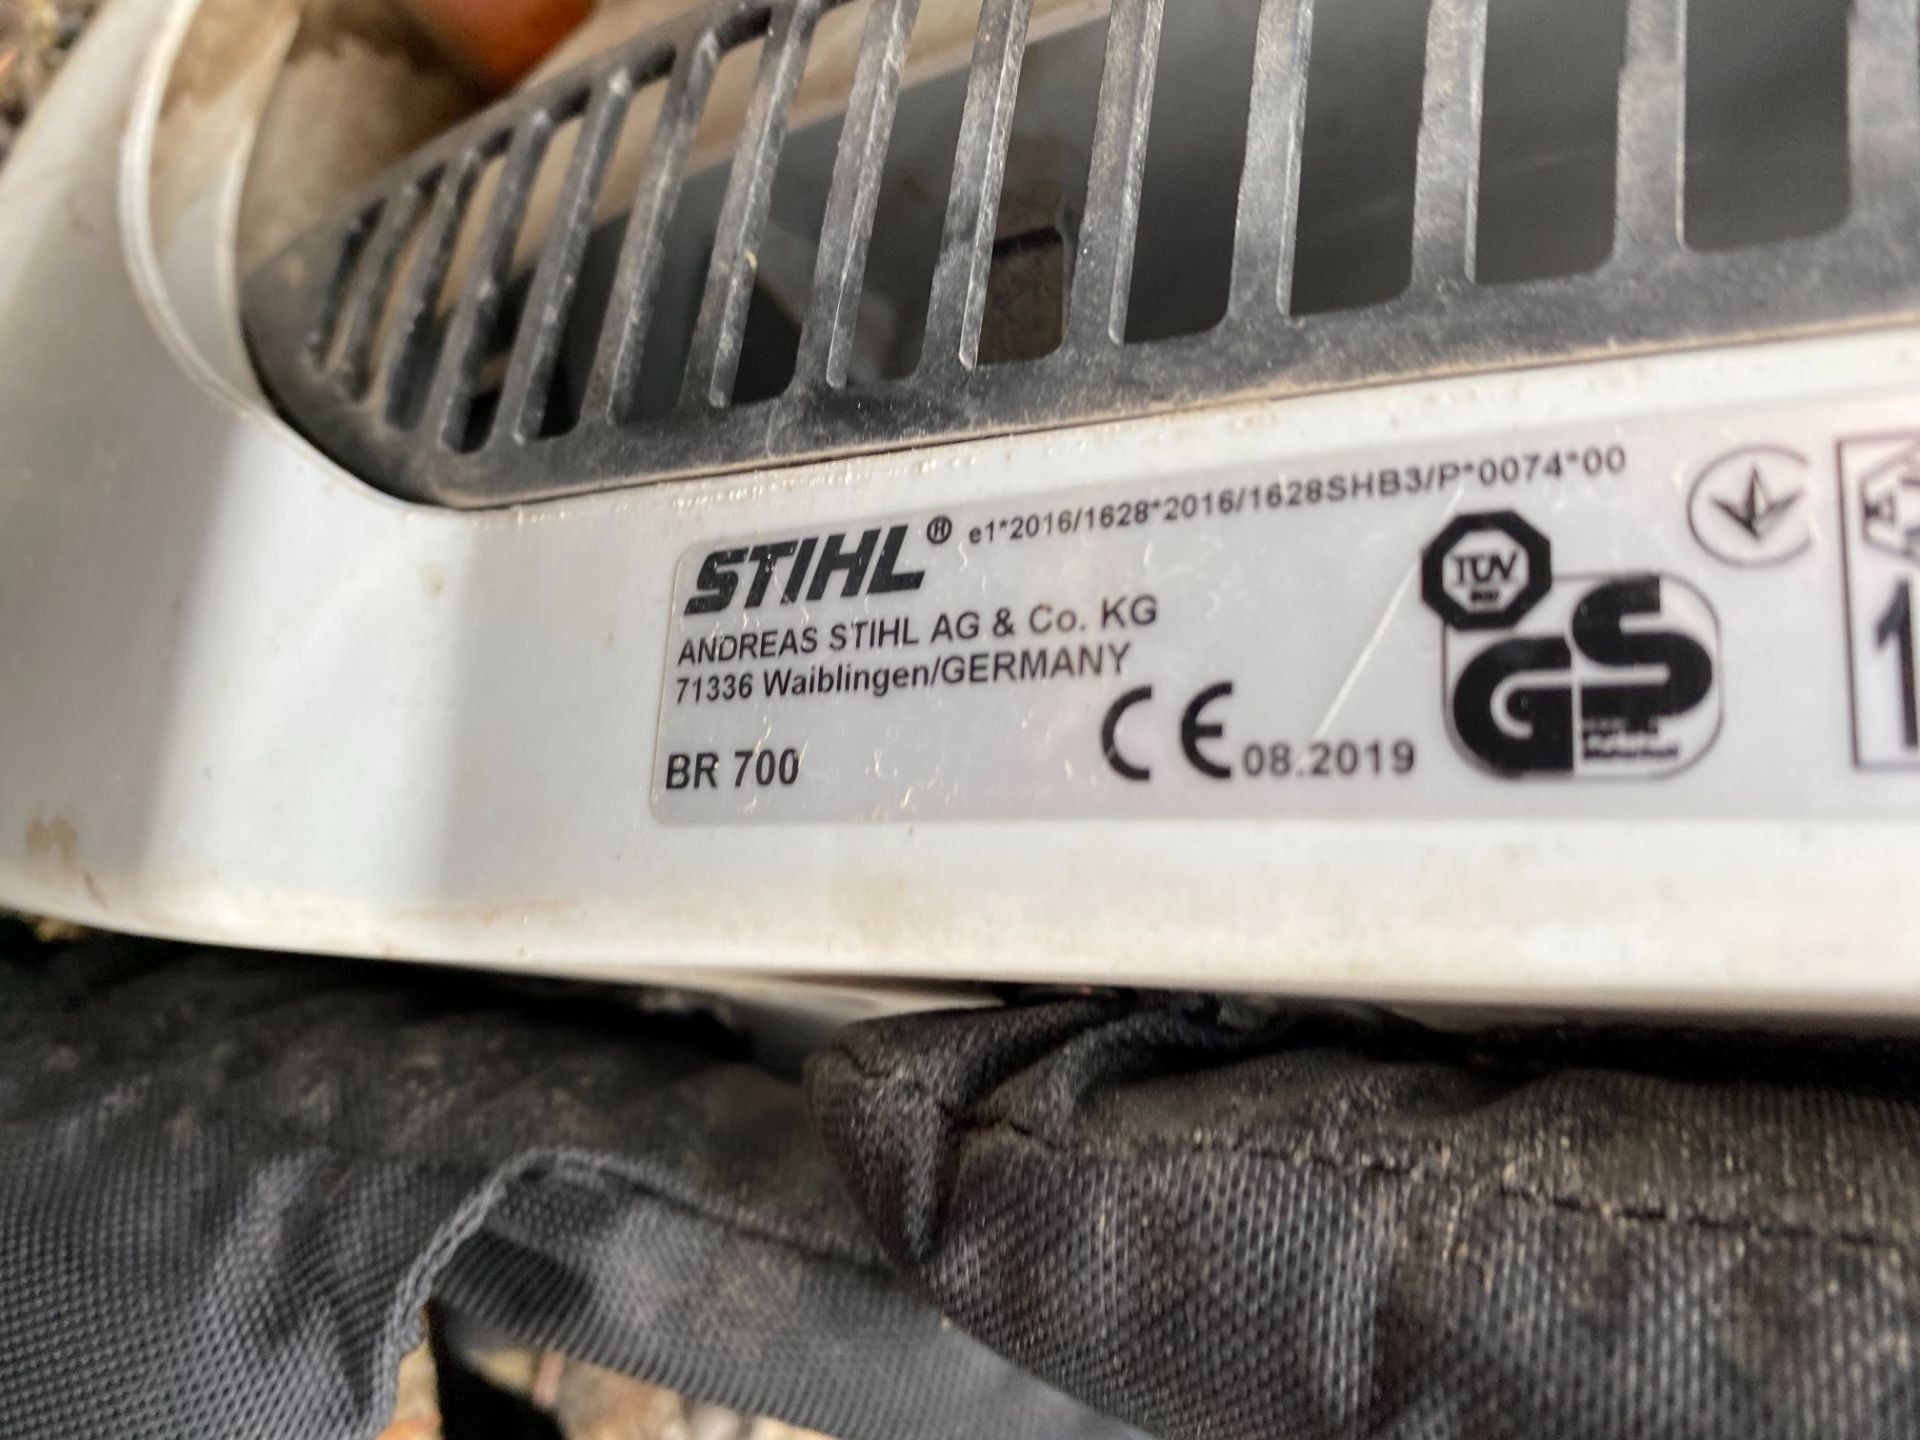 Stihl BR700 petrol backpack leaf blower (2019) - Image 3 of 5